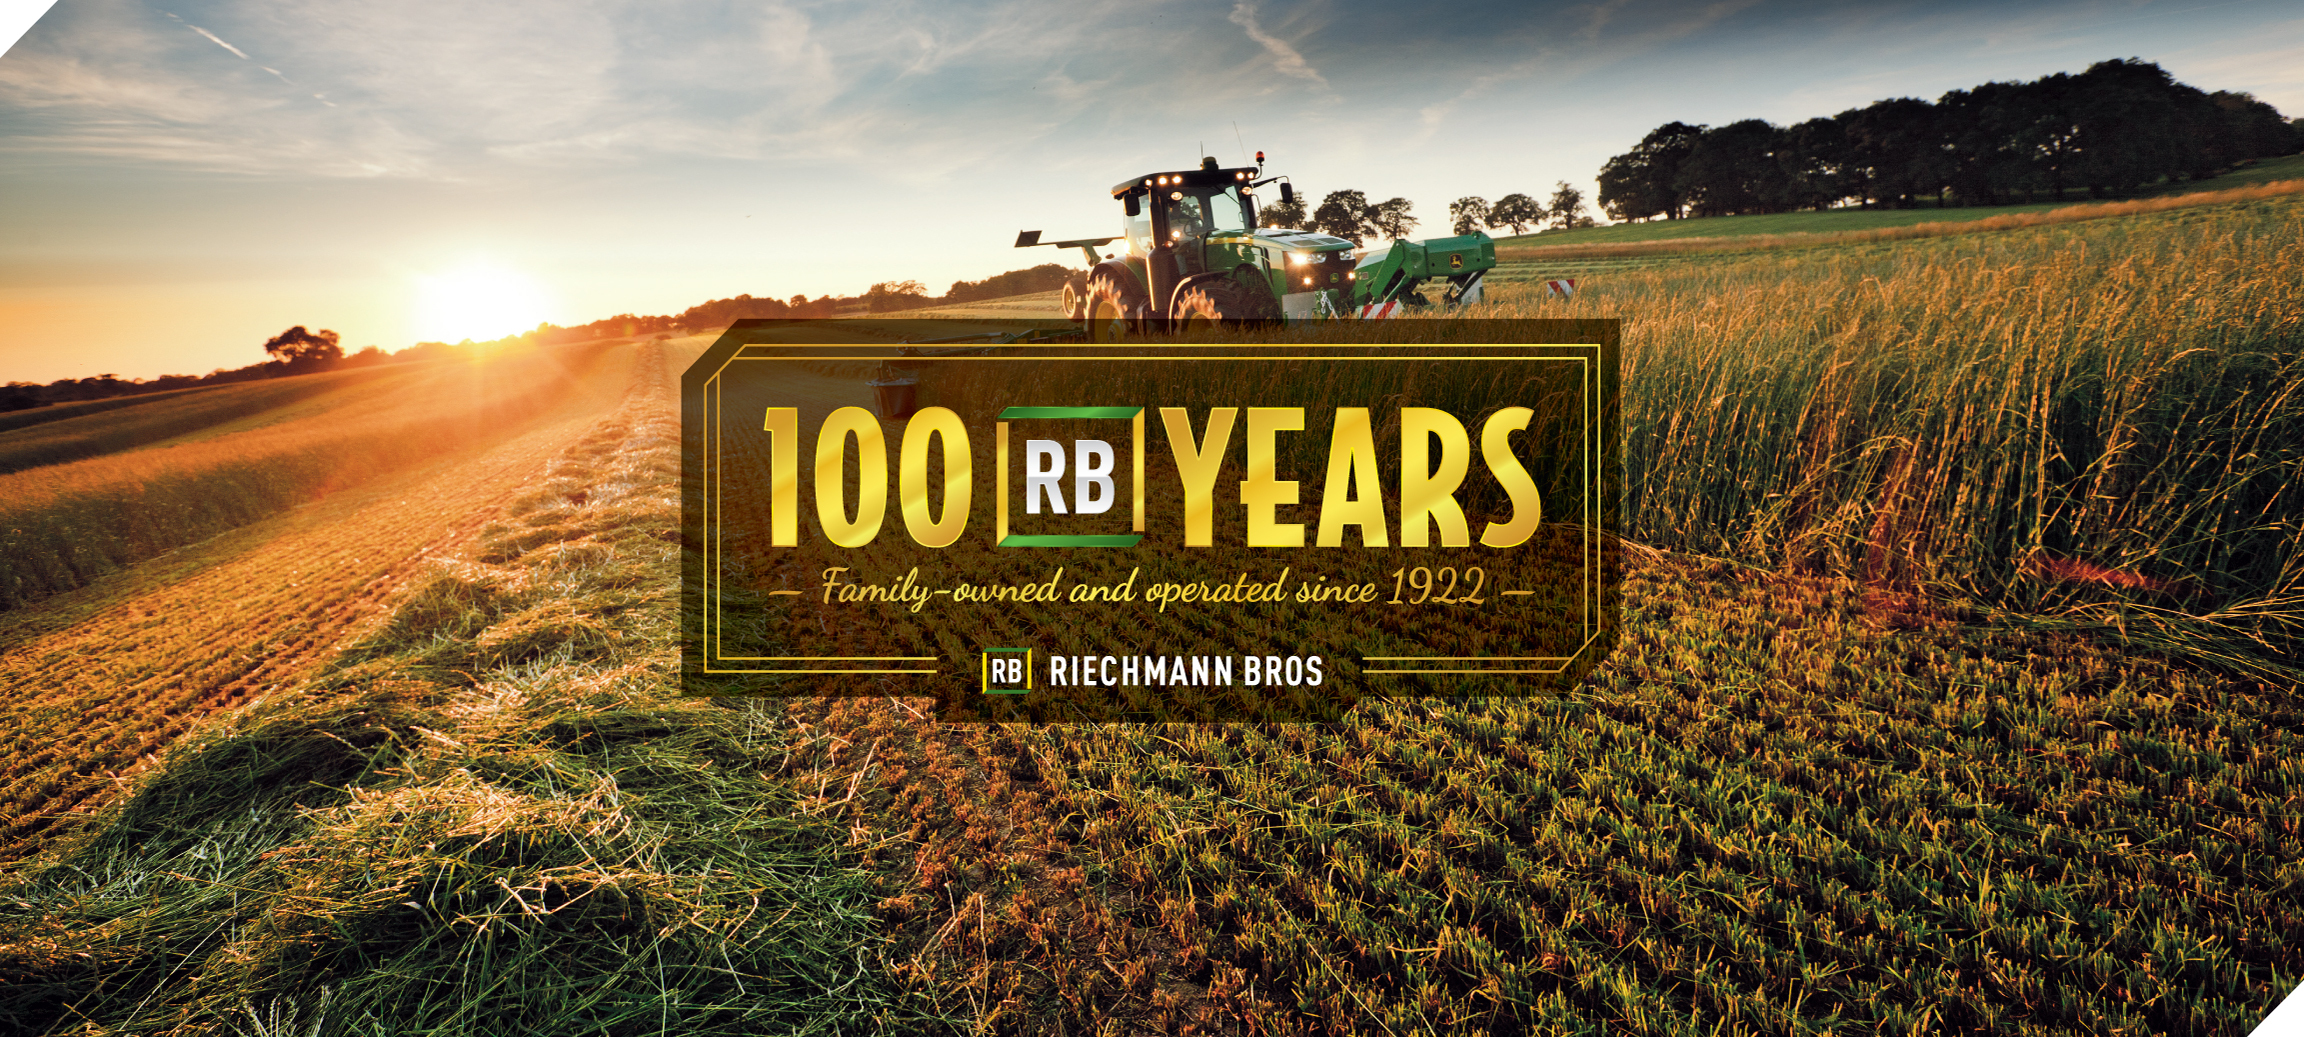 100 Years at Riechmann Bros